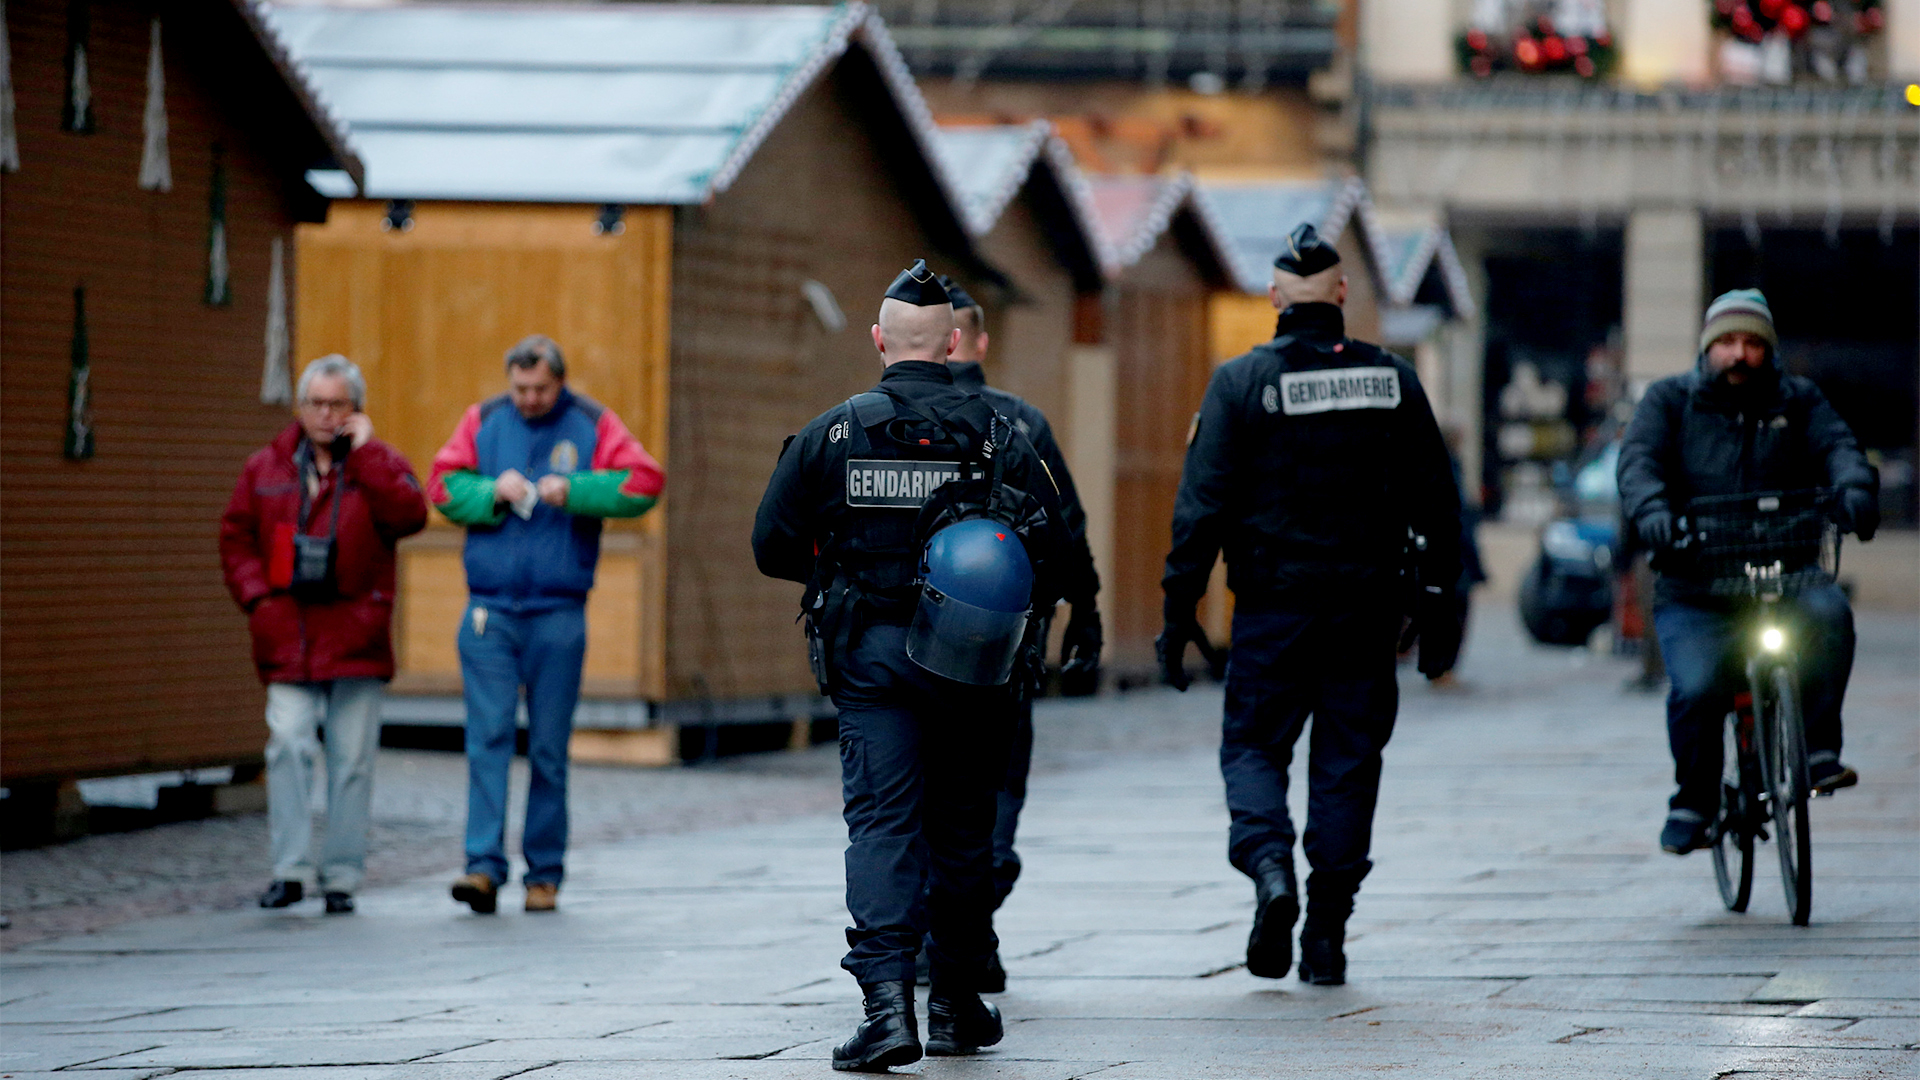 Polizisten gehen am Weihnachtsmarkt in Straßburg vorbei | Bildquelle: REUTERS